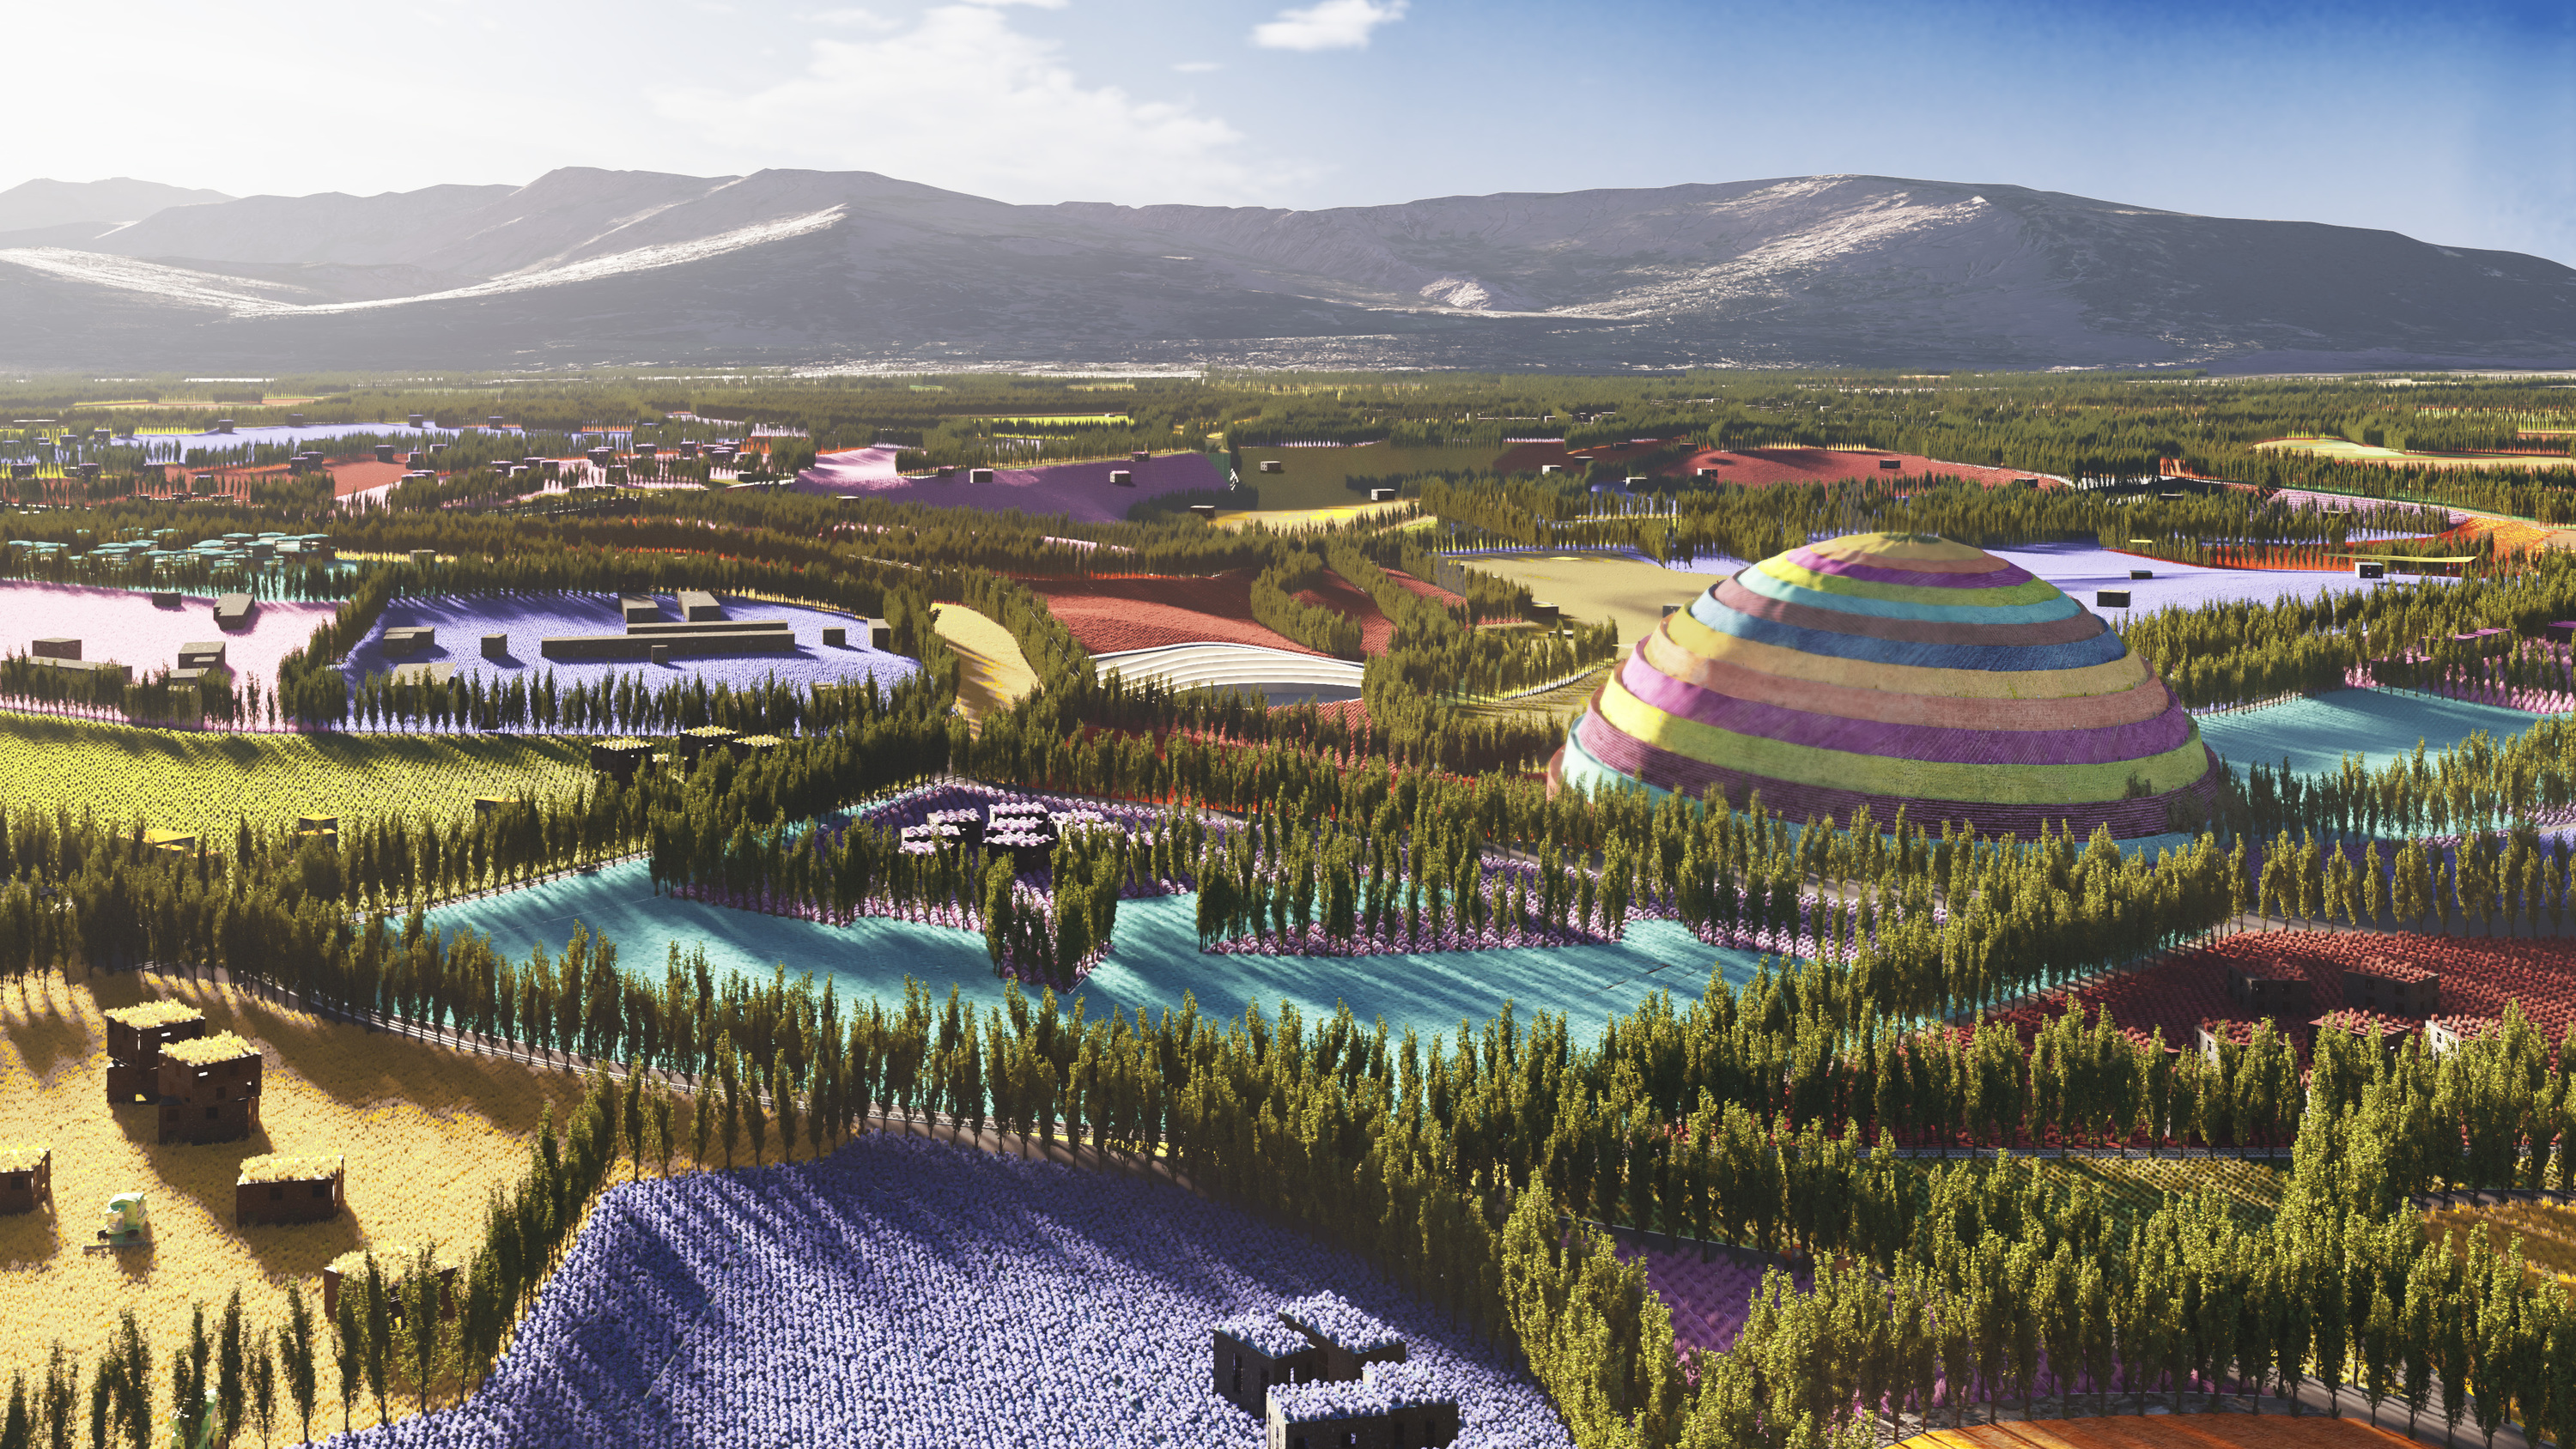 計畫在不同農田地塊植入不同植栽的 Gagarin Valley，將成為 一座色彩繽紛的美麗谷地。